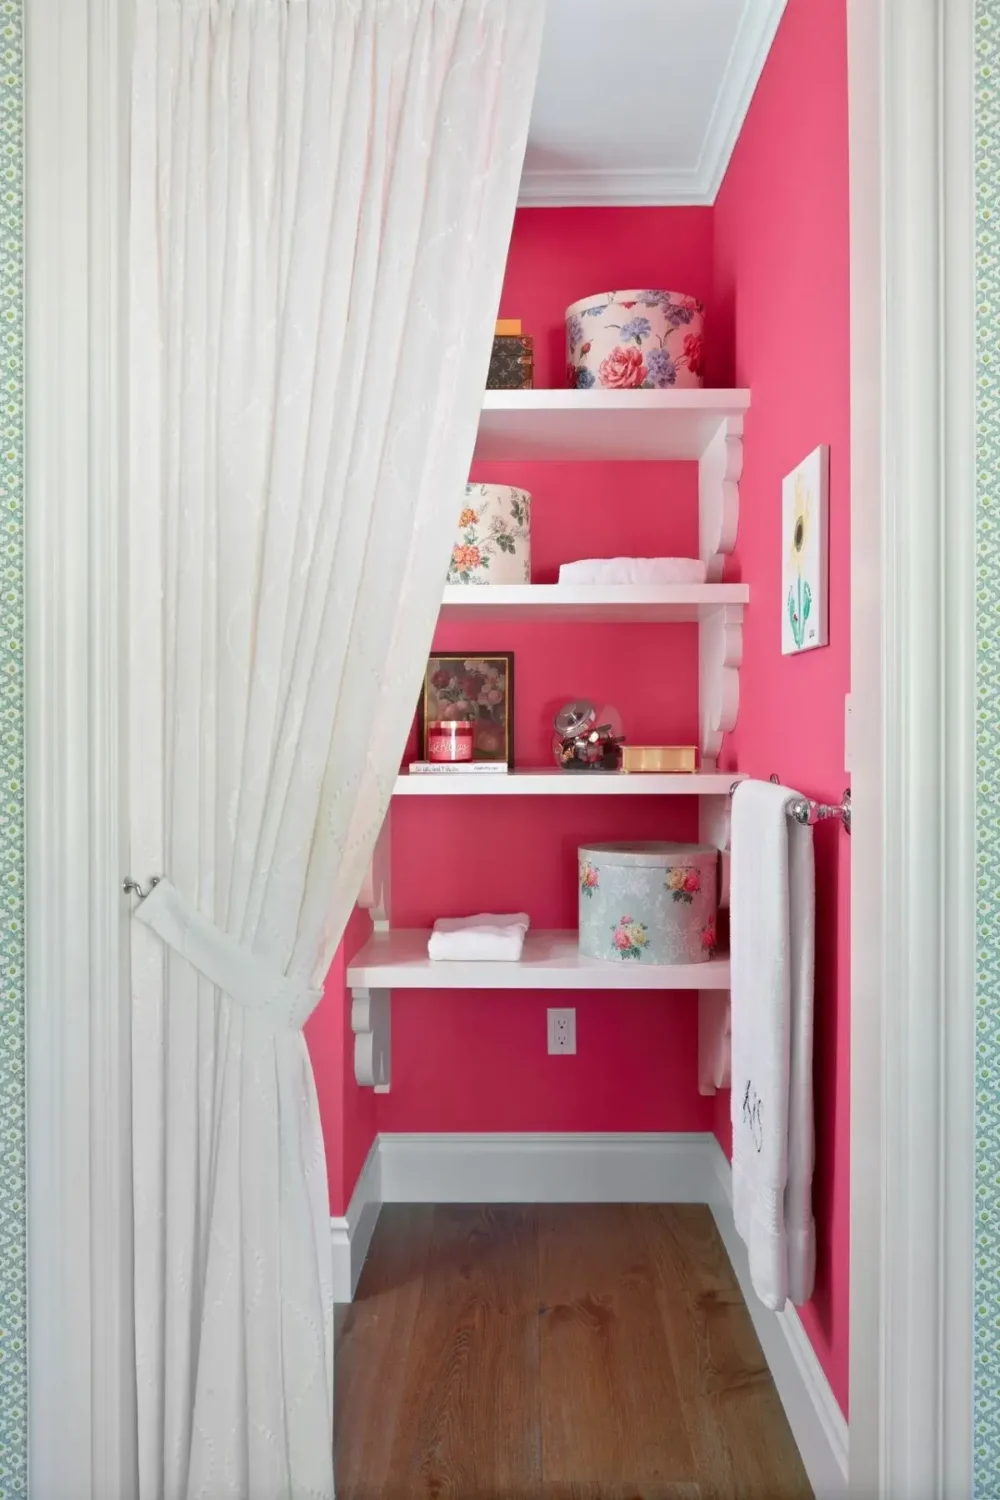 storage-shelves-hot-pink-walls-nordroom